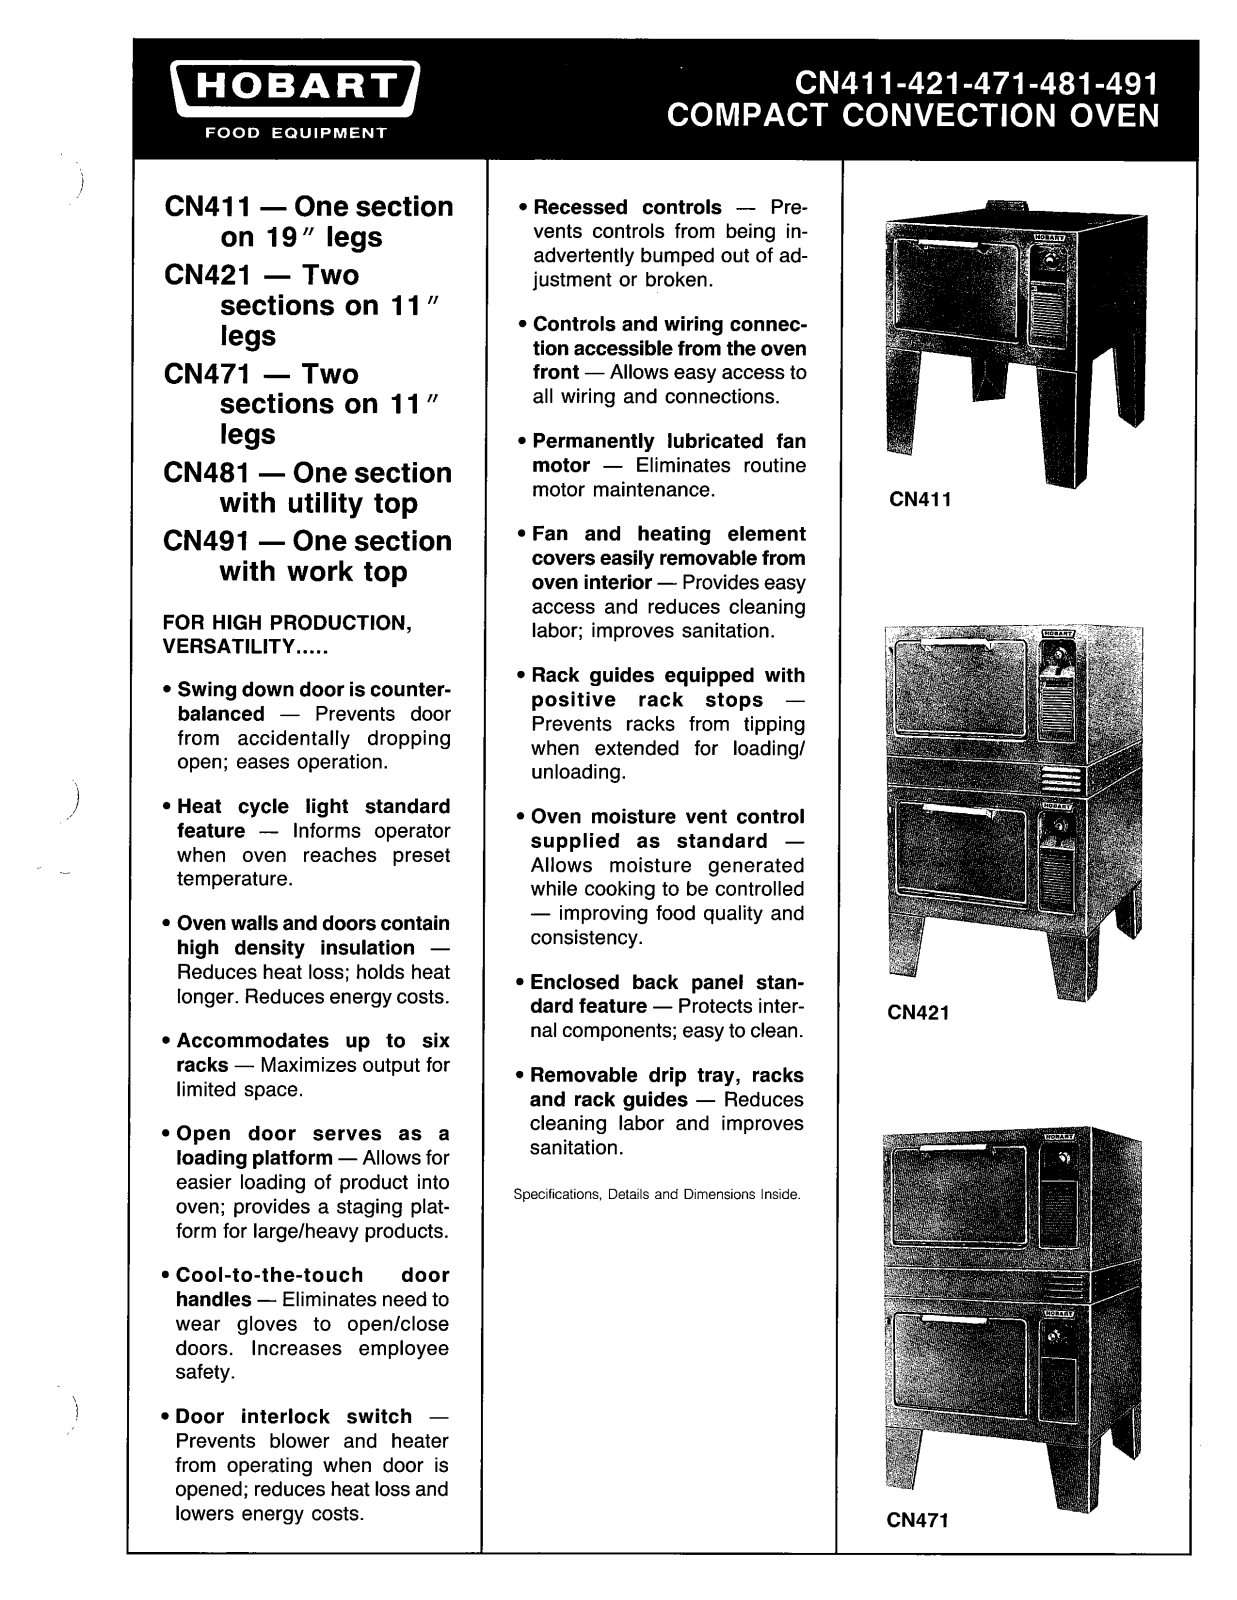 Hobart CN401 User Manual